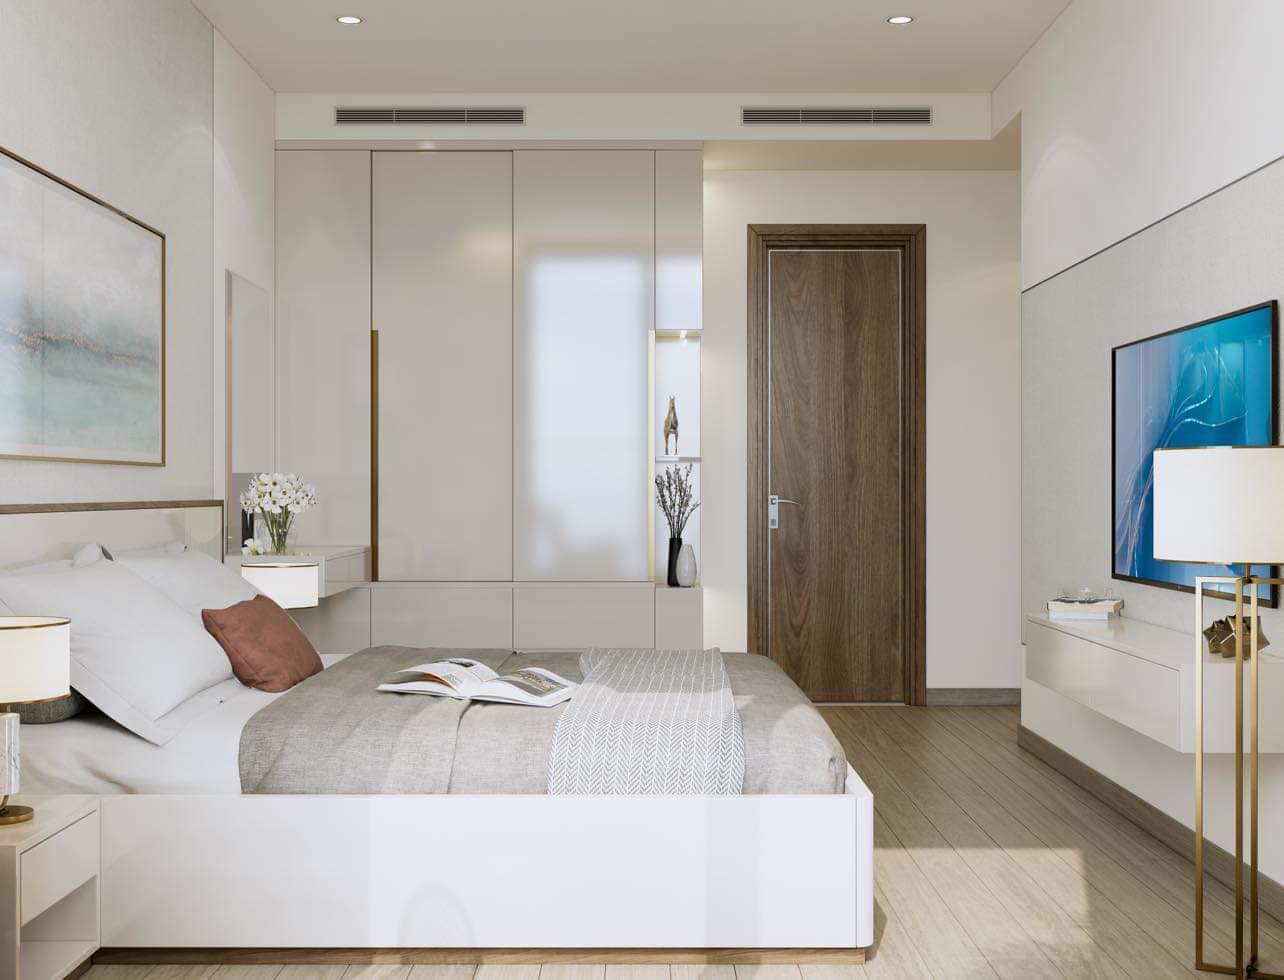 Căn hộ giá tốt nhất 2023 tại Nha Trang - CT1 Riverside Luxury giá 31tr/m2. Vị trí trung tâm kết nối 4